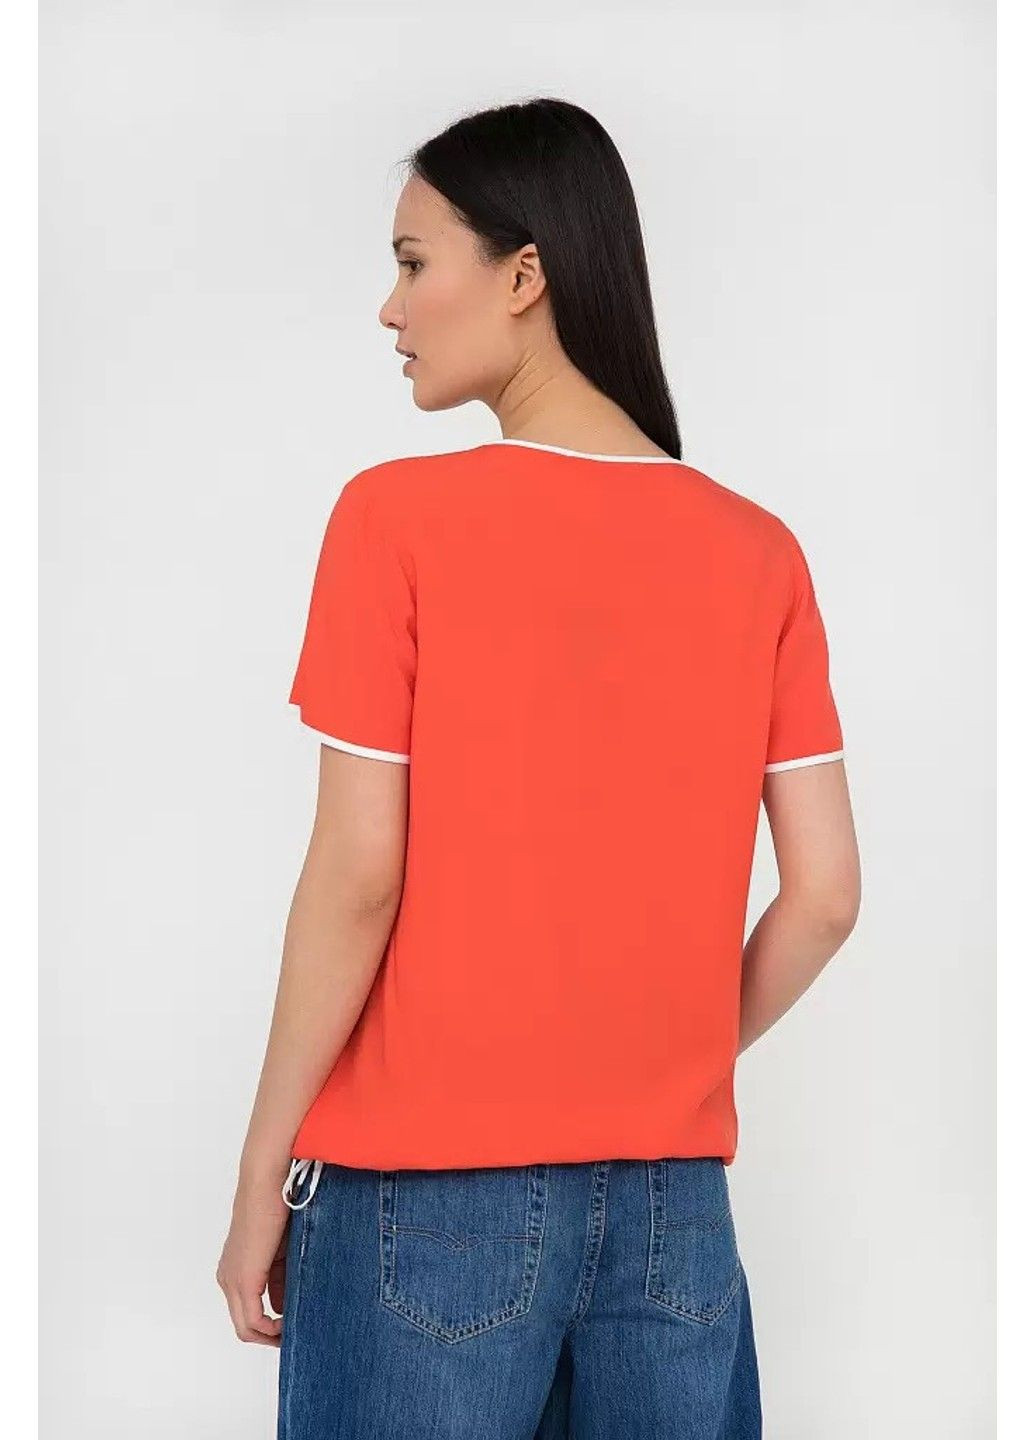 Красная летняя блузка s20-12054-329 Finn Flare